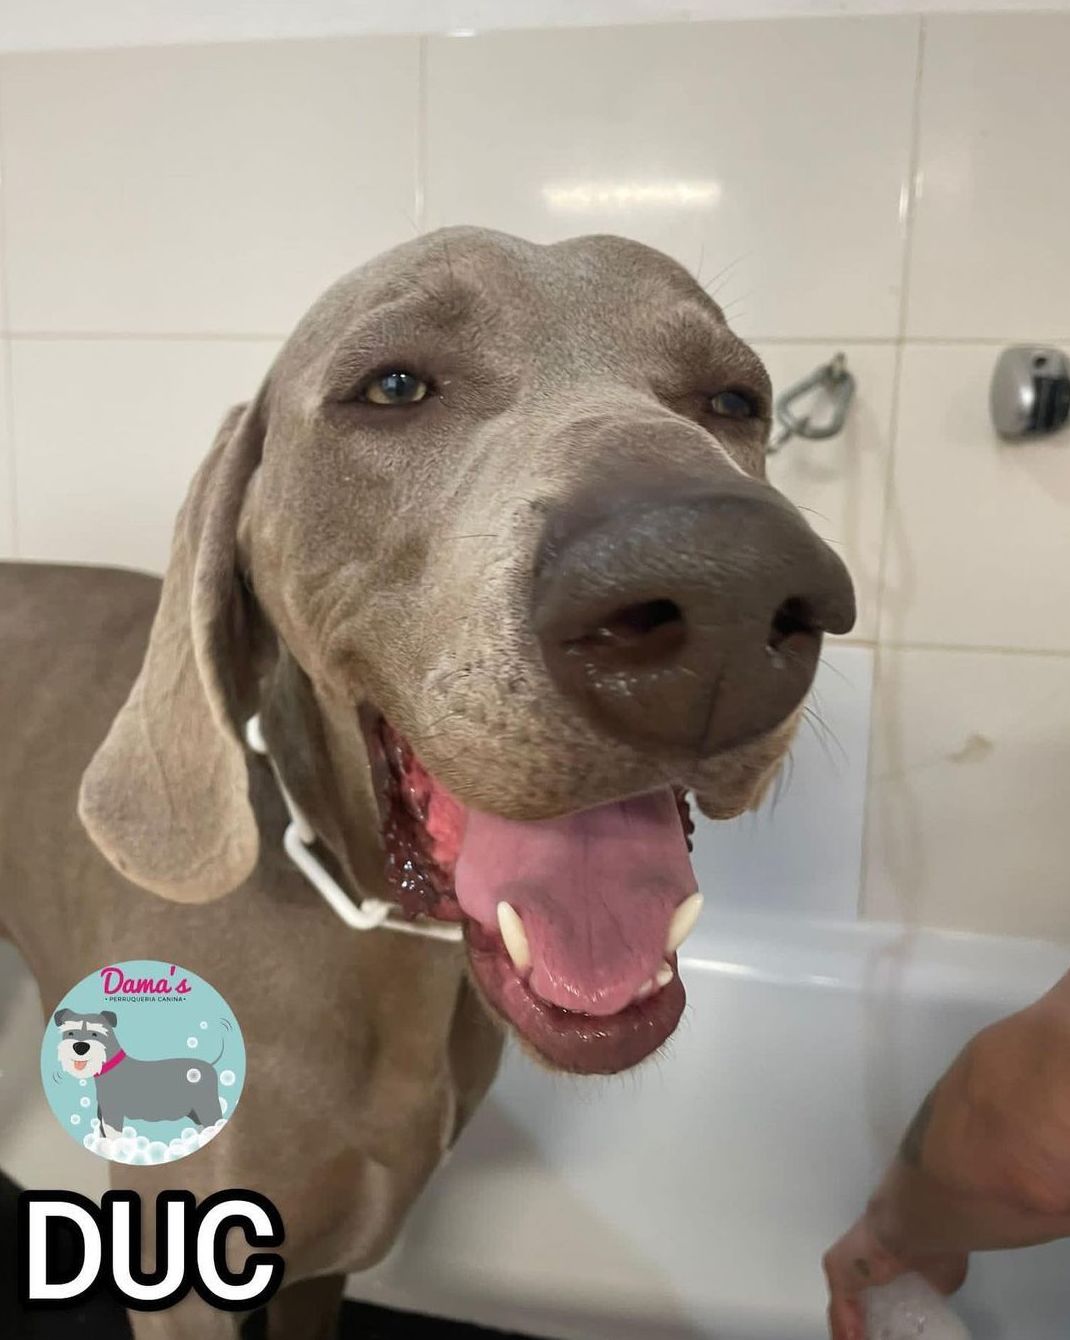 Foto 92 de Peluquería canina con todo tipo de tratamientos para tu mascota en  | Dama's